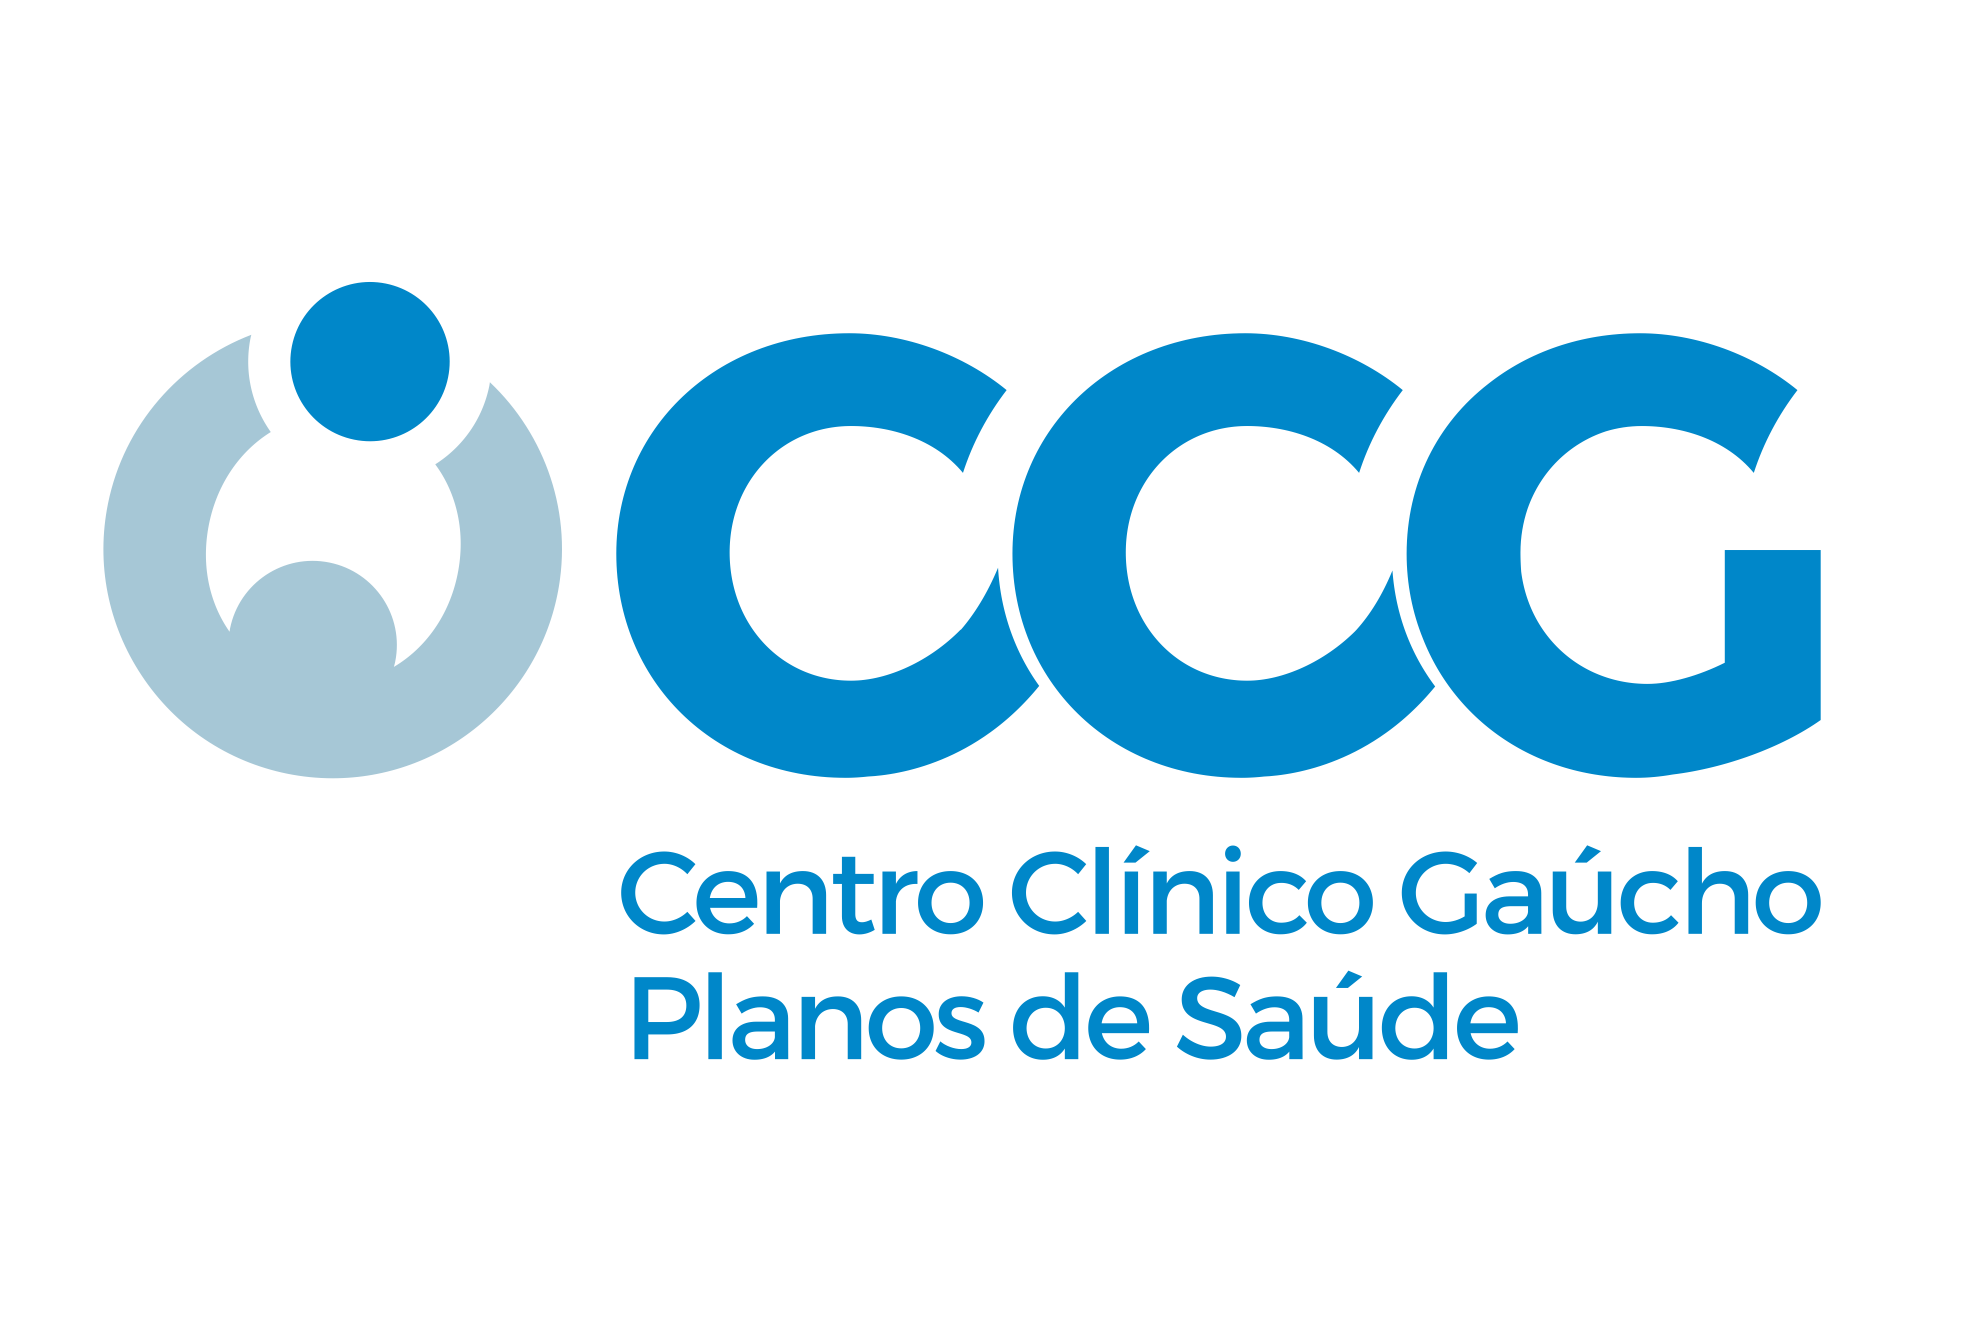 CENTRO CLINICO GAUCHO - Porto Alegre, RS